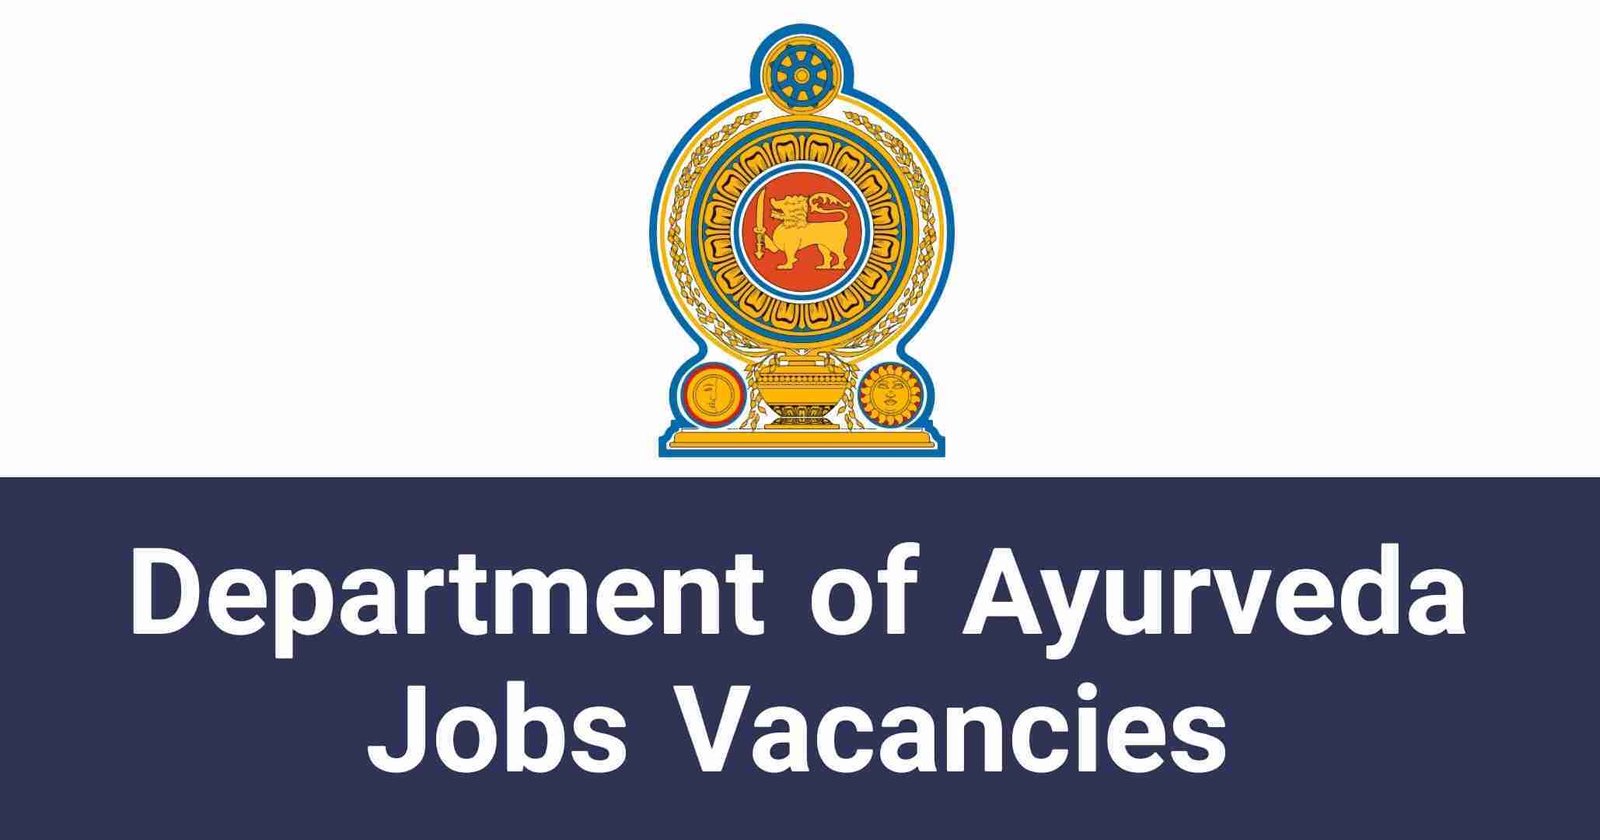 Department of Ayurveda Jobs Vacancies